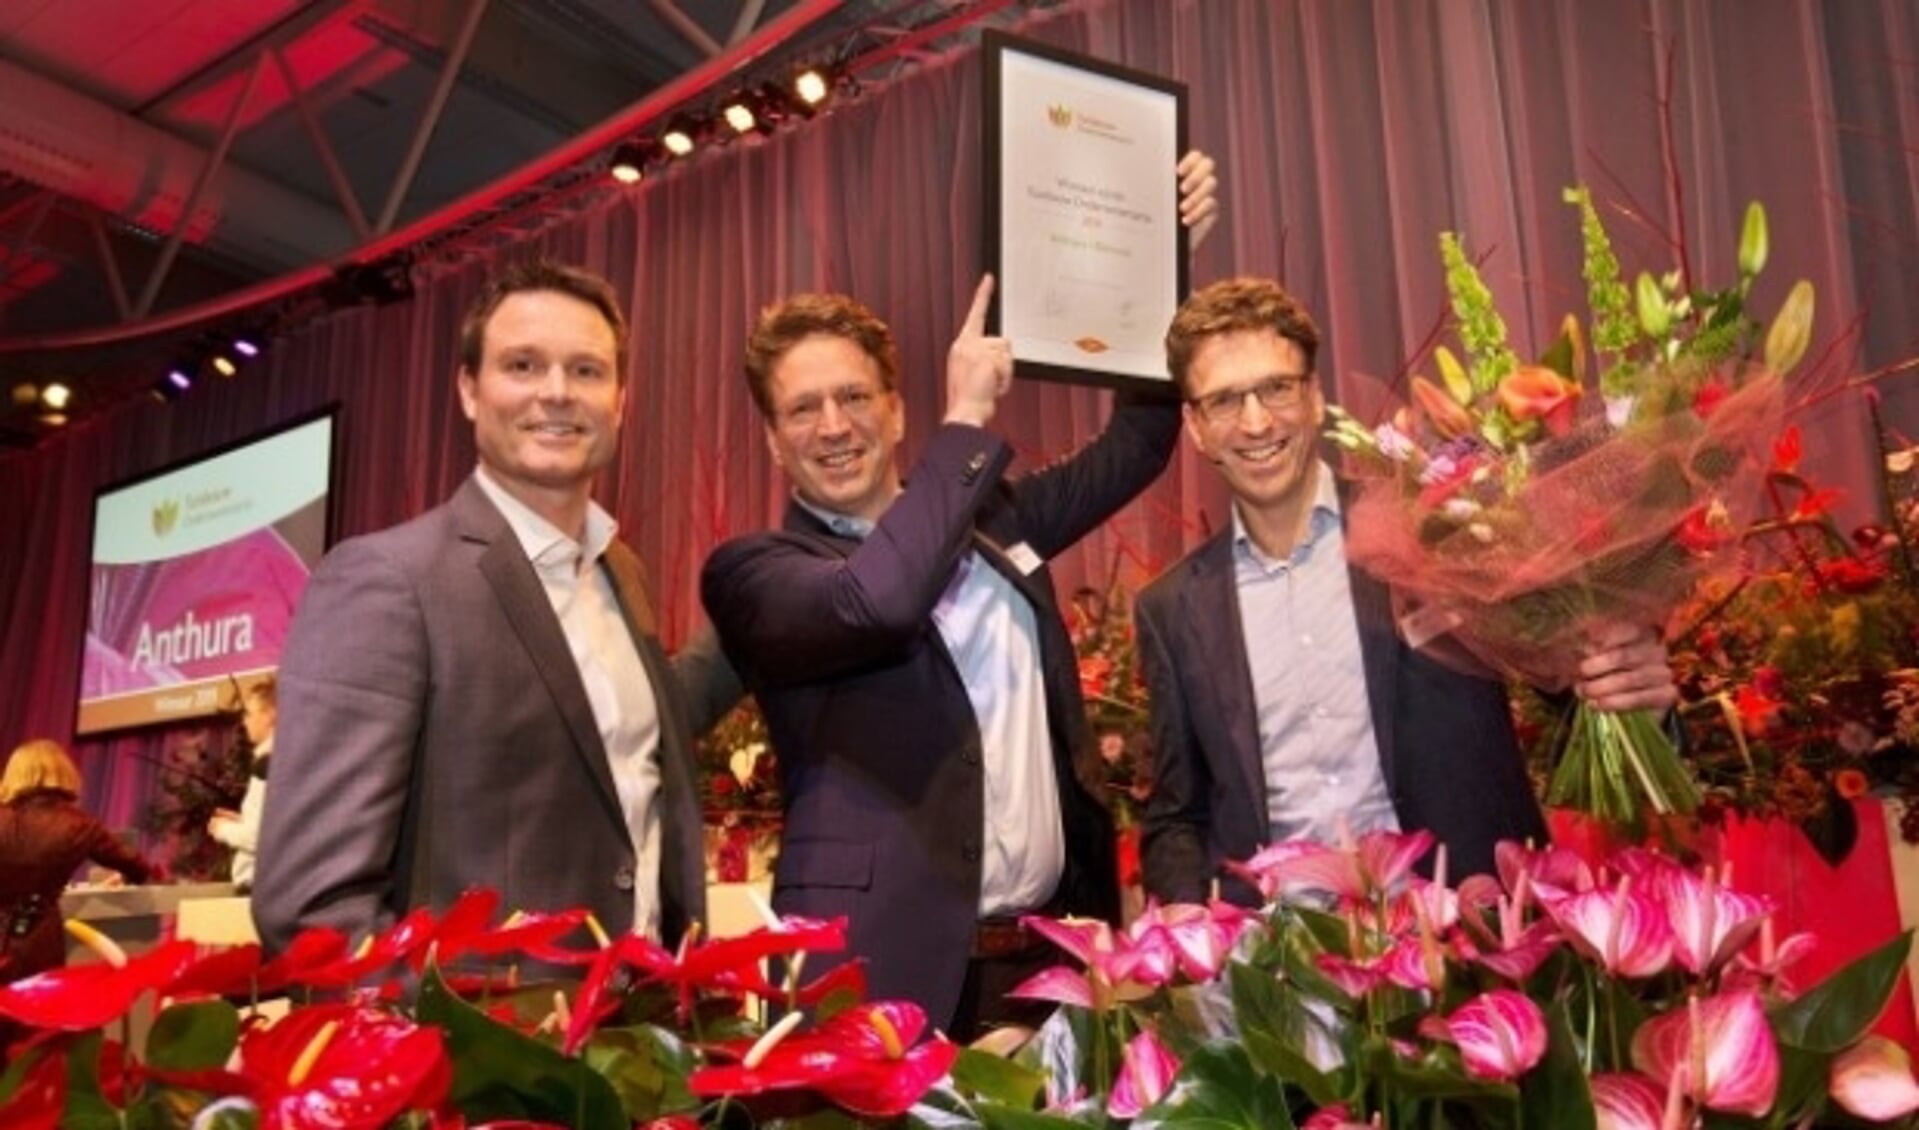 Het Bleiswijkse Anthura was de winnaar in 2019. (Foto: GJ Vlekke)